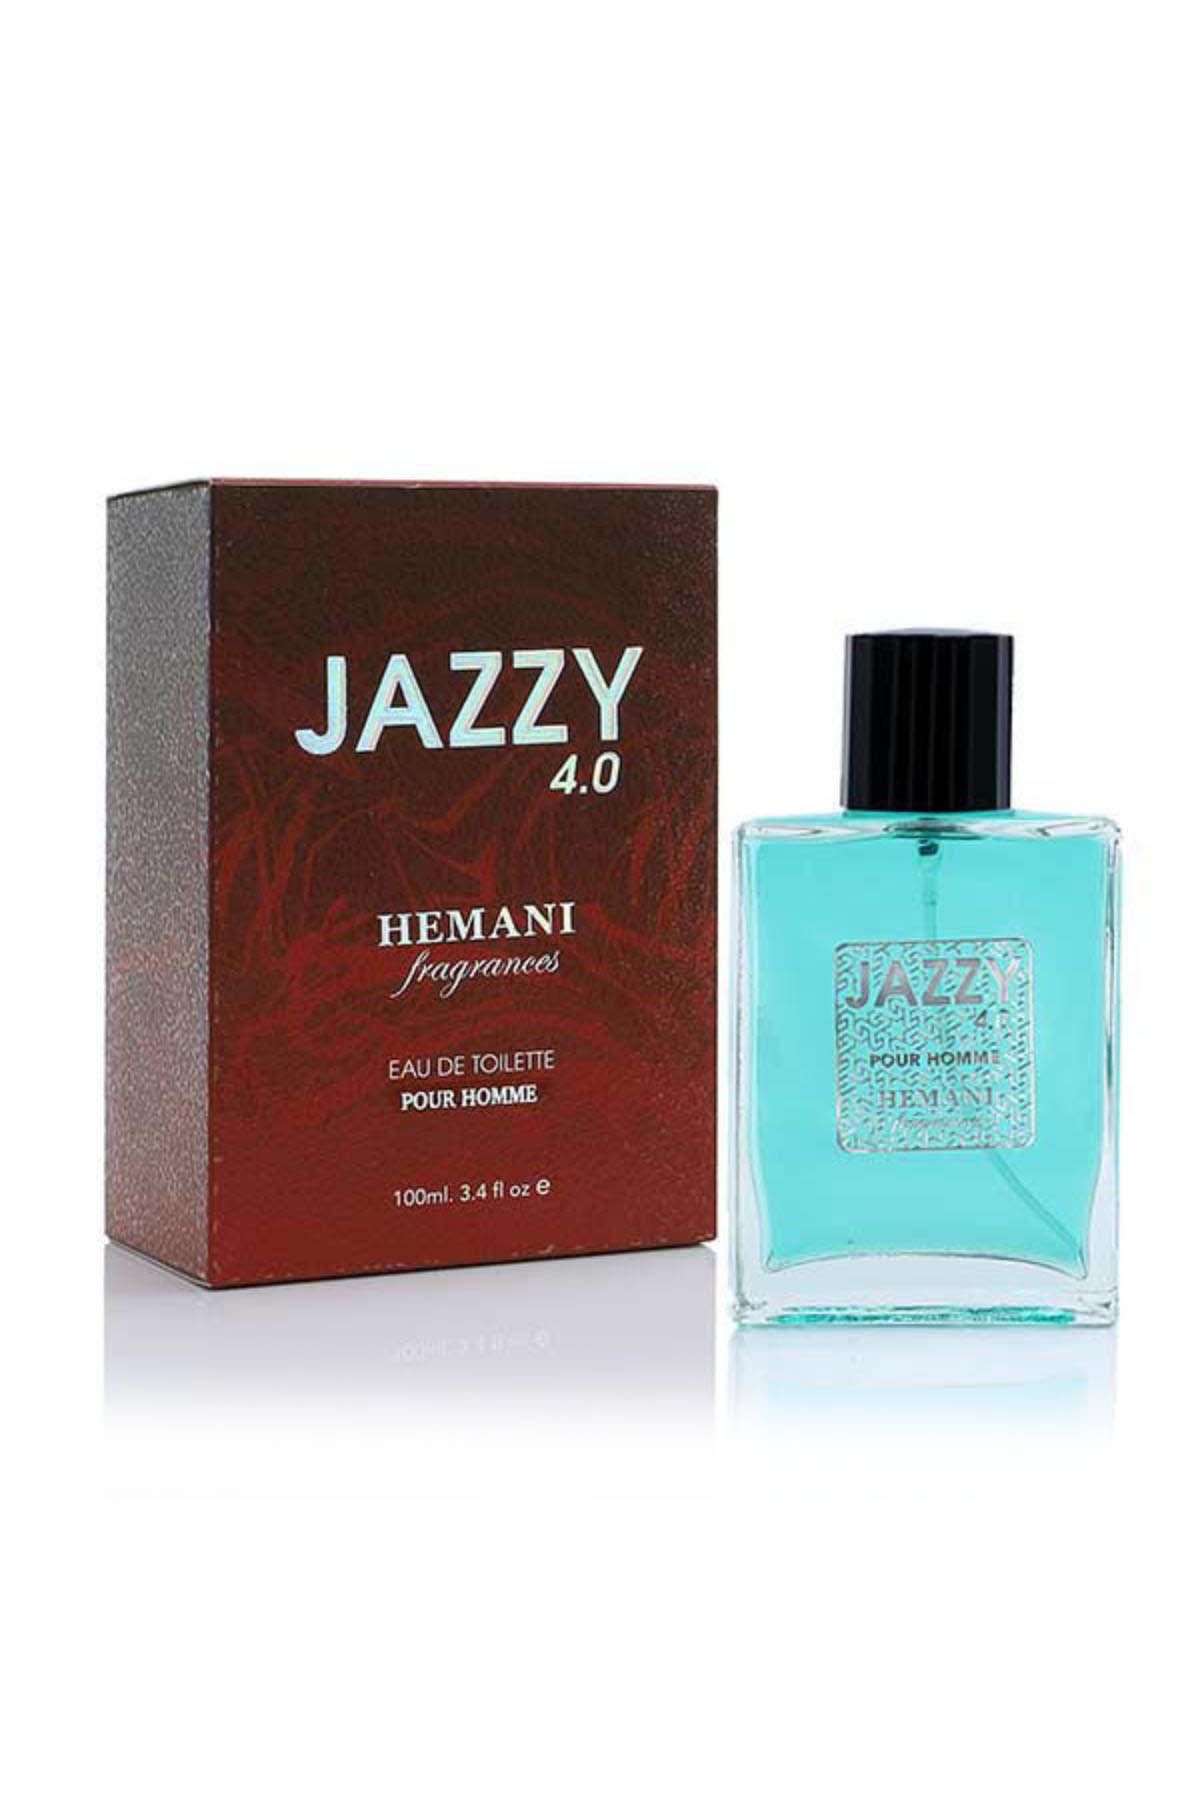 Jazzy 4.0 Edt Perfume - Men